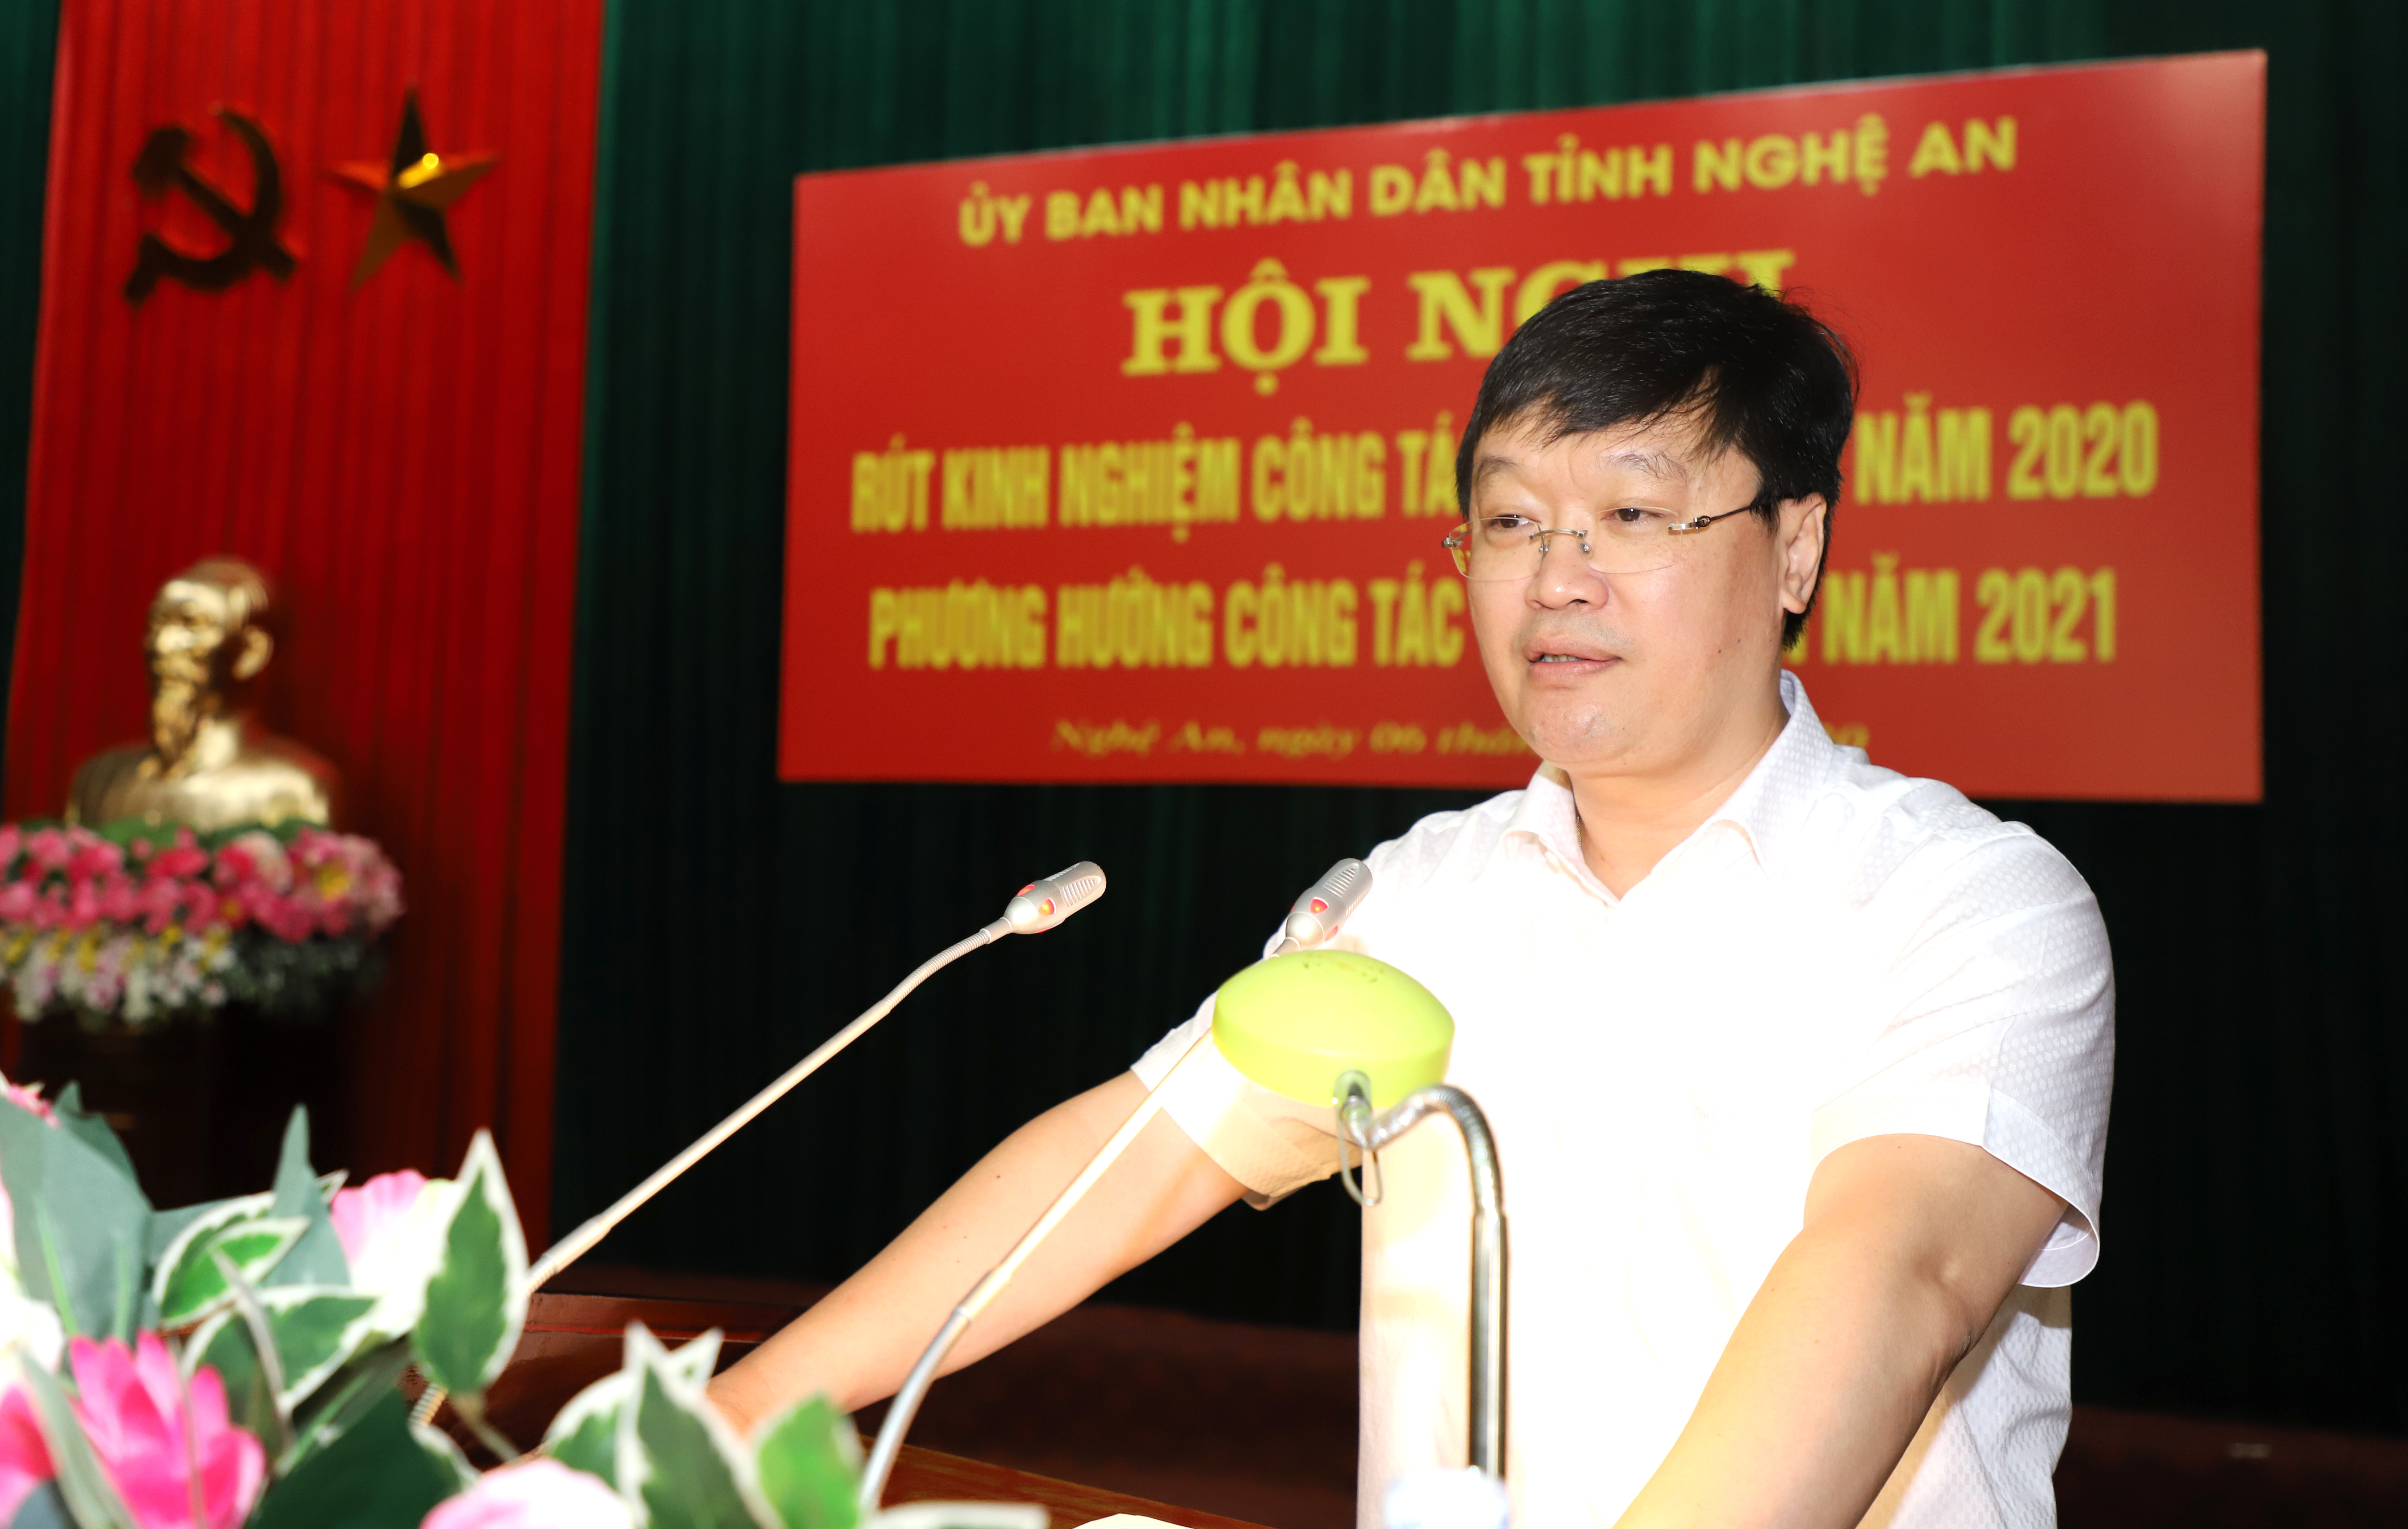 Đồng chí Nguyễn Đức Trung - Chủ tịch UBND tỉnh kết luận hội nghị. Ảnh: Phạm Bằng